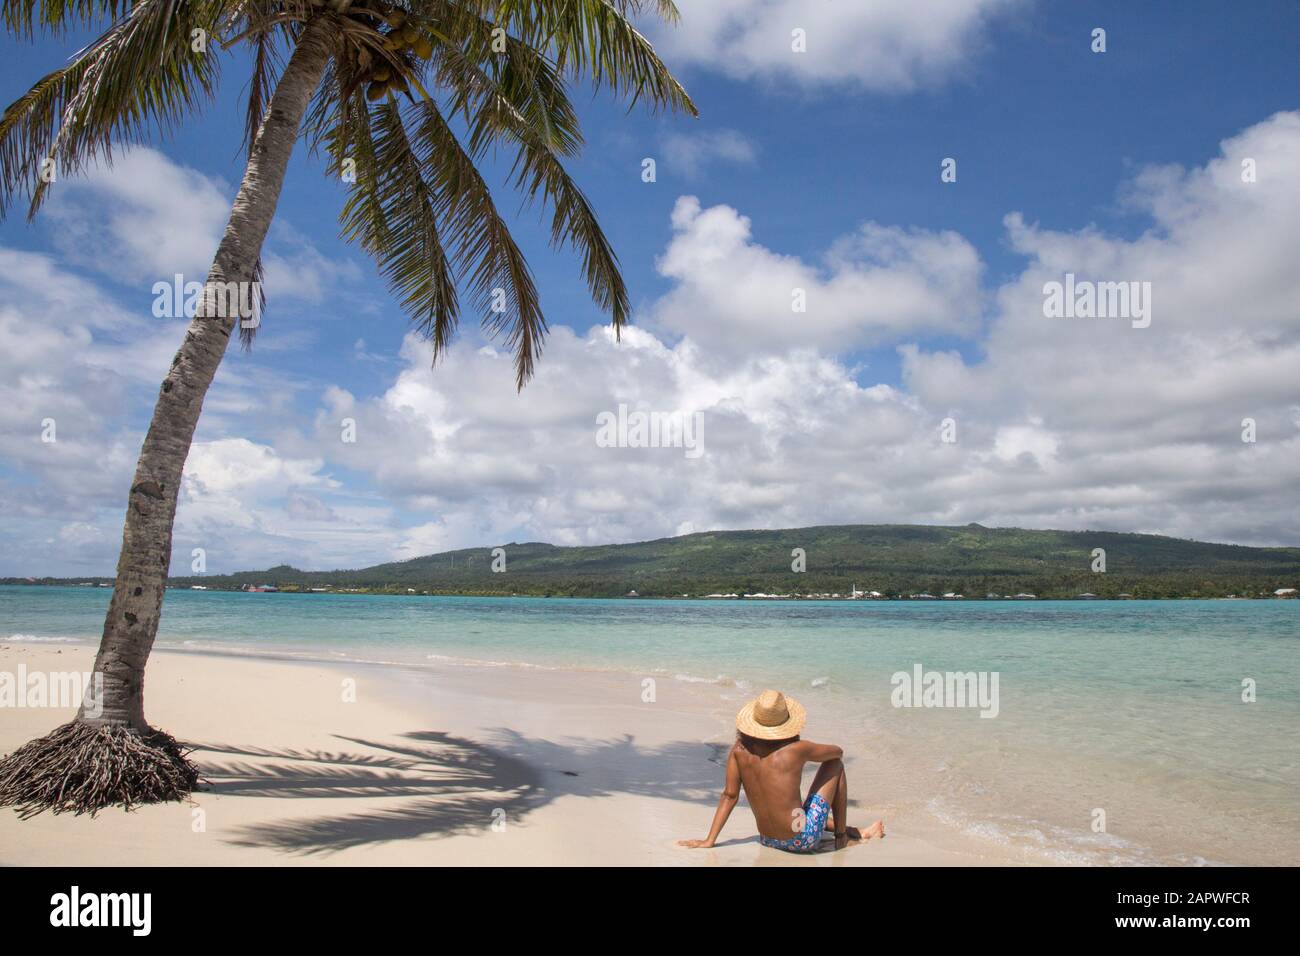 Un uomo, indossando costumi da bagno blu, sotto la palma sulla spiaggia di sabbia bianca Foto Stock